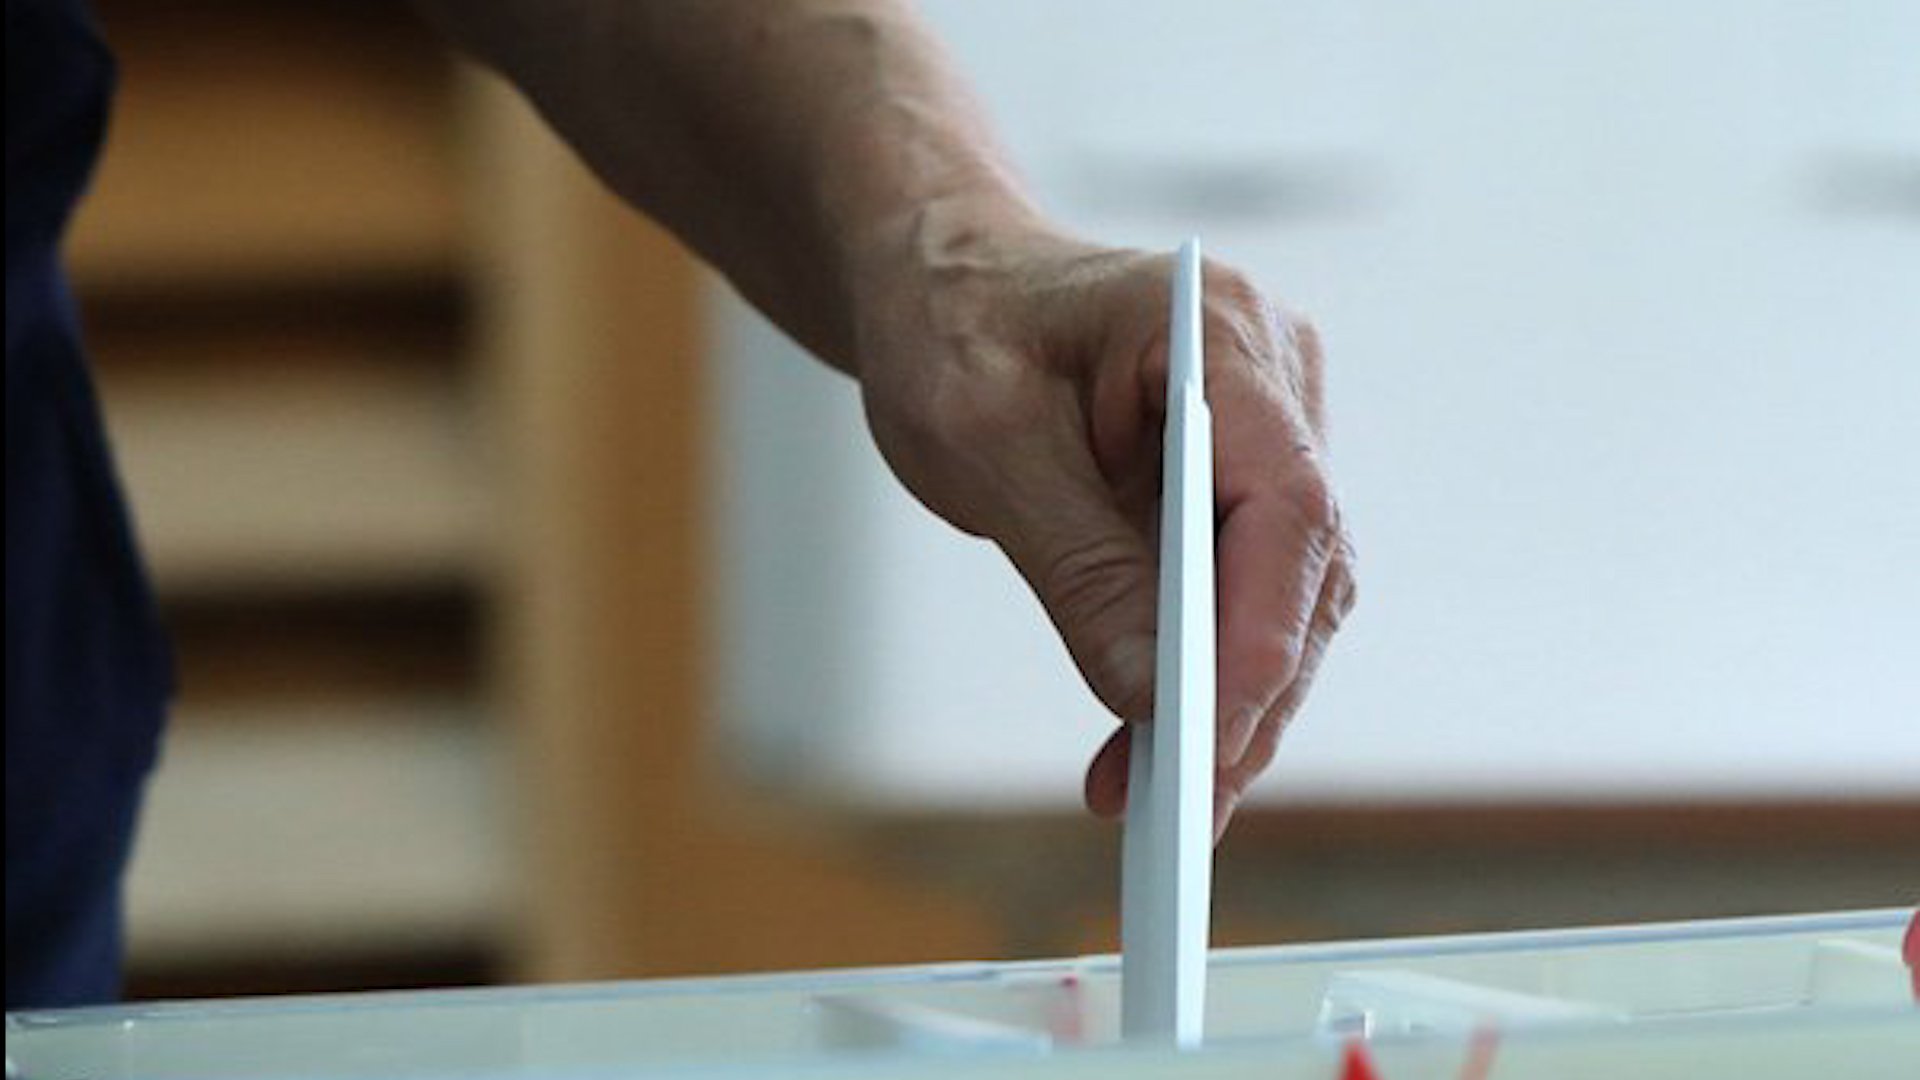 Այսօր ՏԻՄ համամասնական ընտրակարգով ընտրություններ են. ժամը 8.00-ին բացվել են բոլոր 314 ընտրական տեղամասերը և ընդունել առաջին ընտրողներին